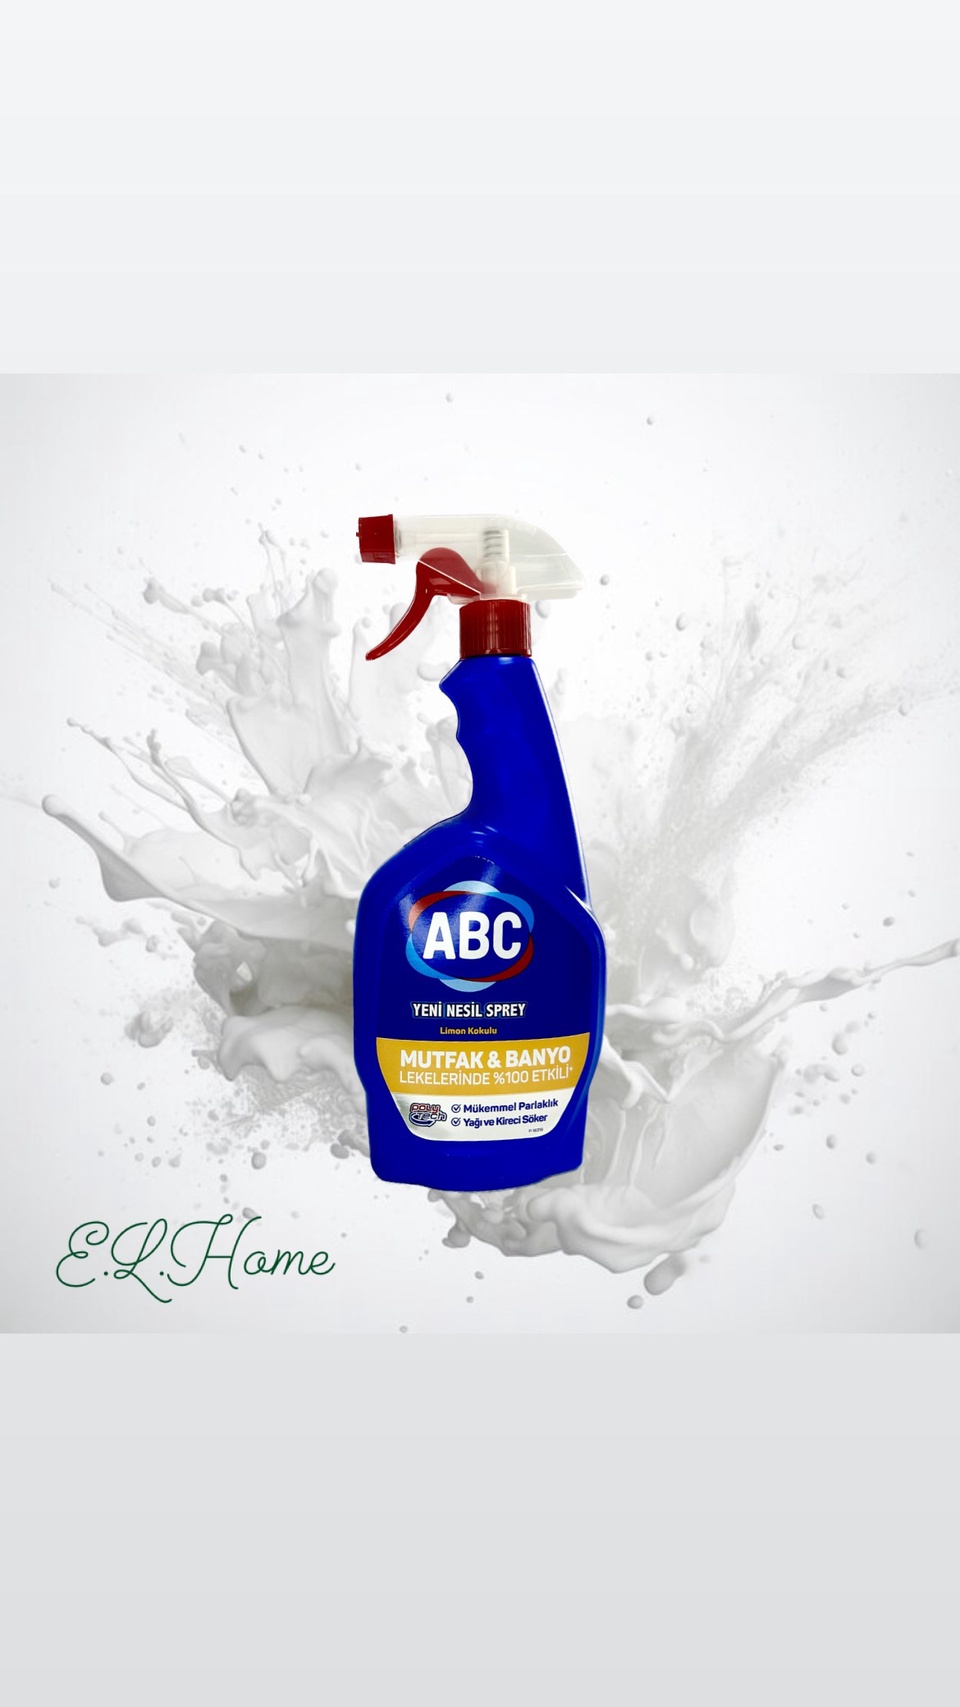 Универсальное чистящее ср-во ABC с ароматом лимона 750ml - 250 ₽, заказать онлайн.